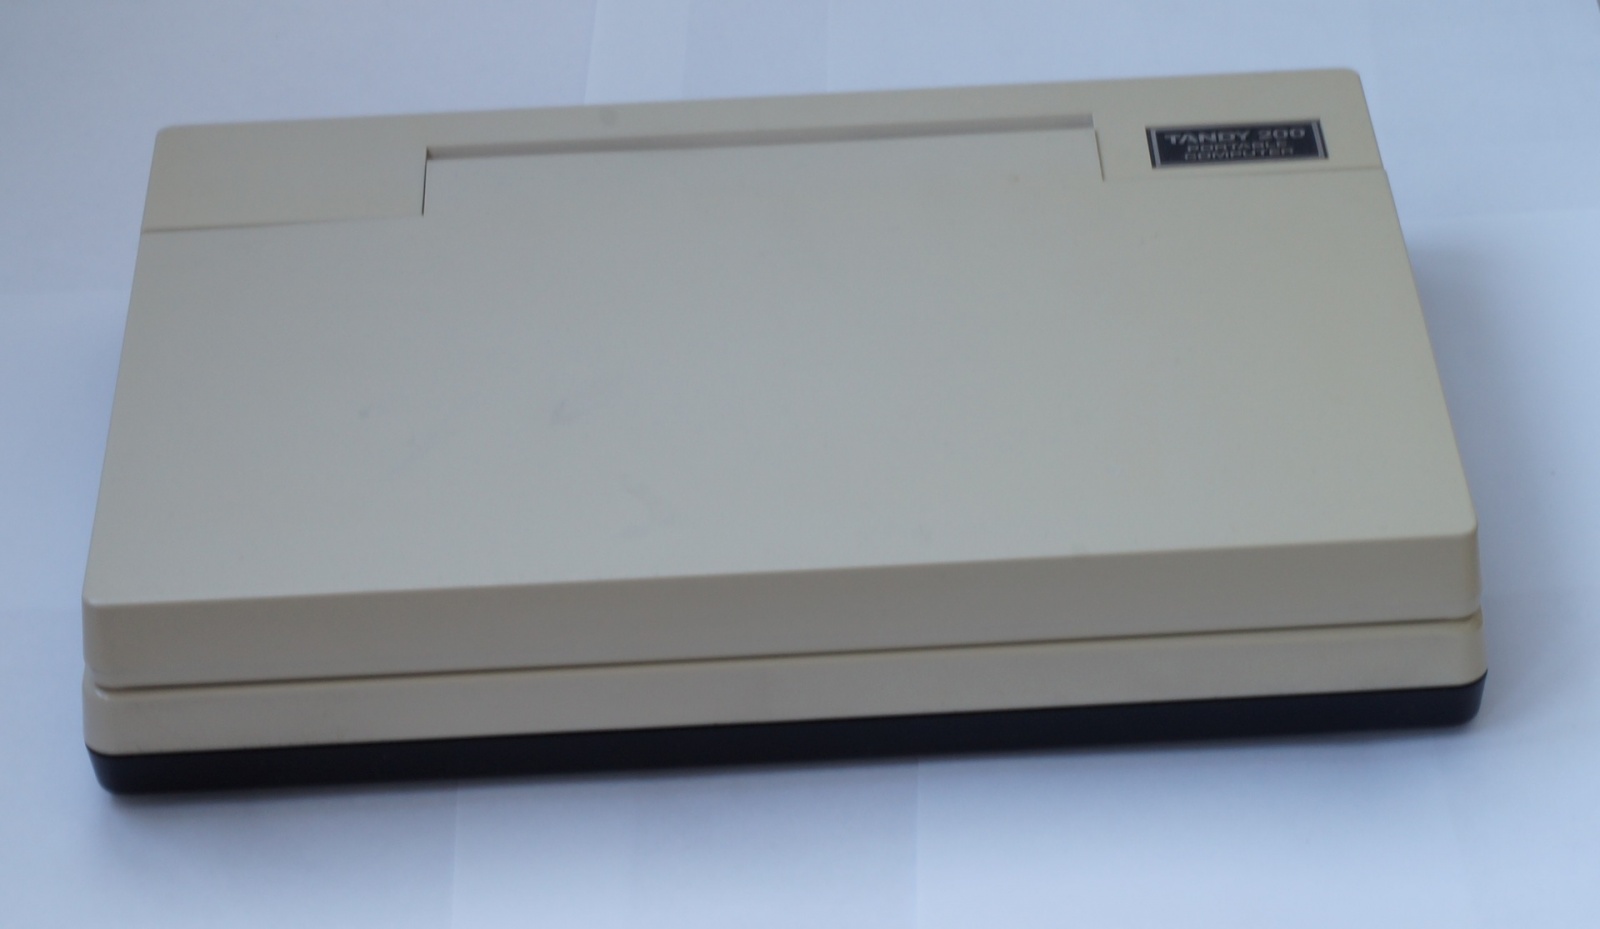 Ноутбук Tandy TRS-80 model 200 - 2